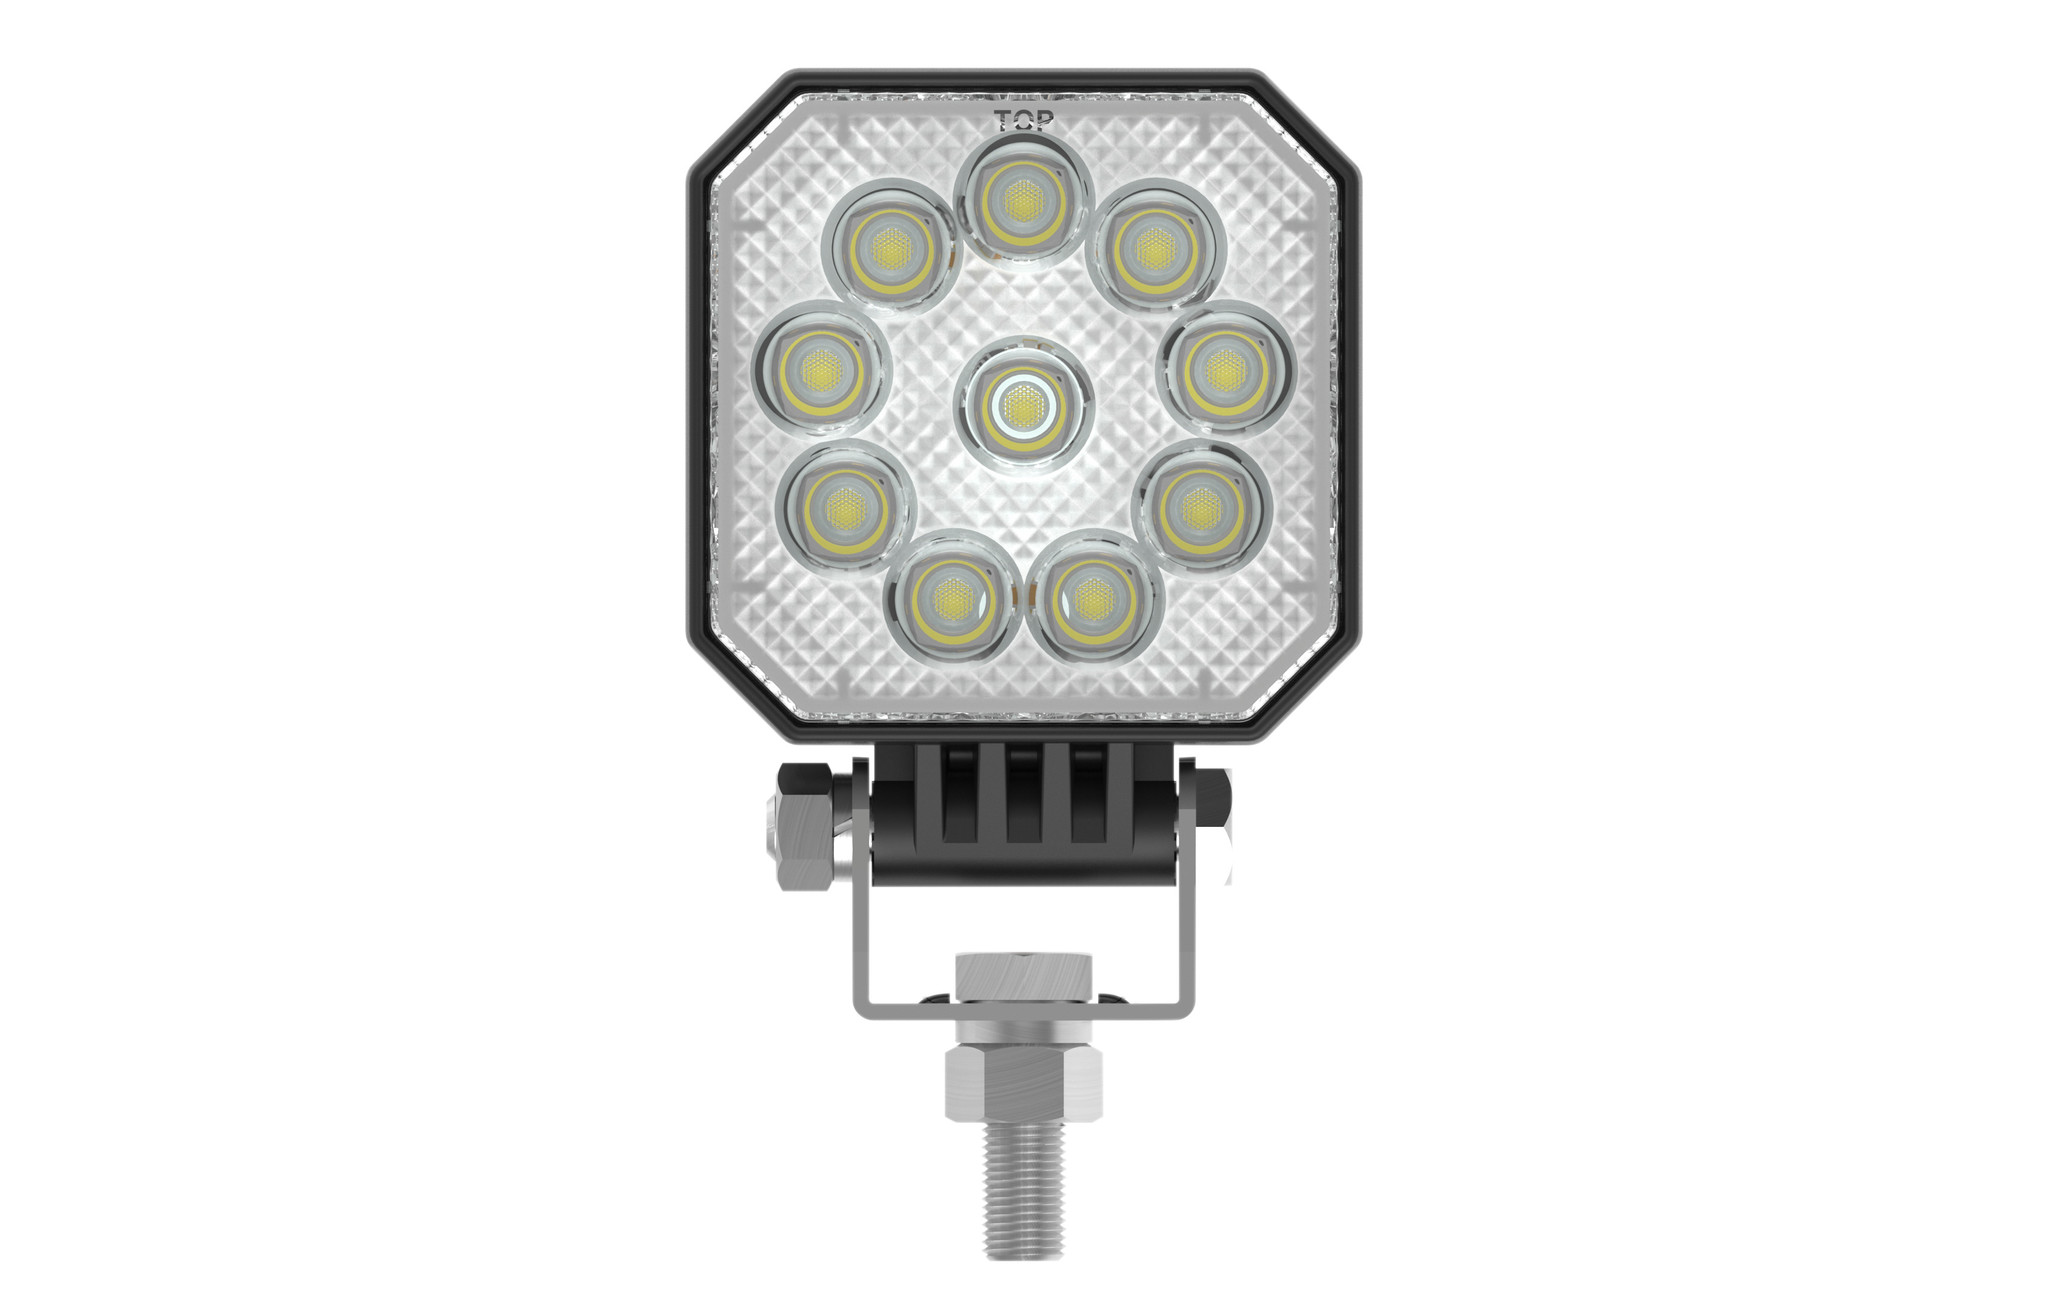 Aspock LED werklamp 12/24V met schakelaar - inclusief montagebeugel -  Aanhanger onderdelen voordelig bestellen